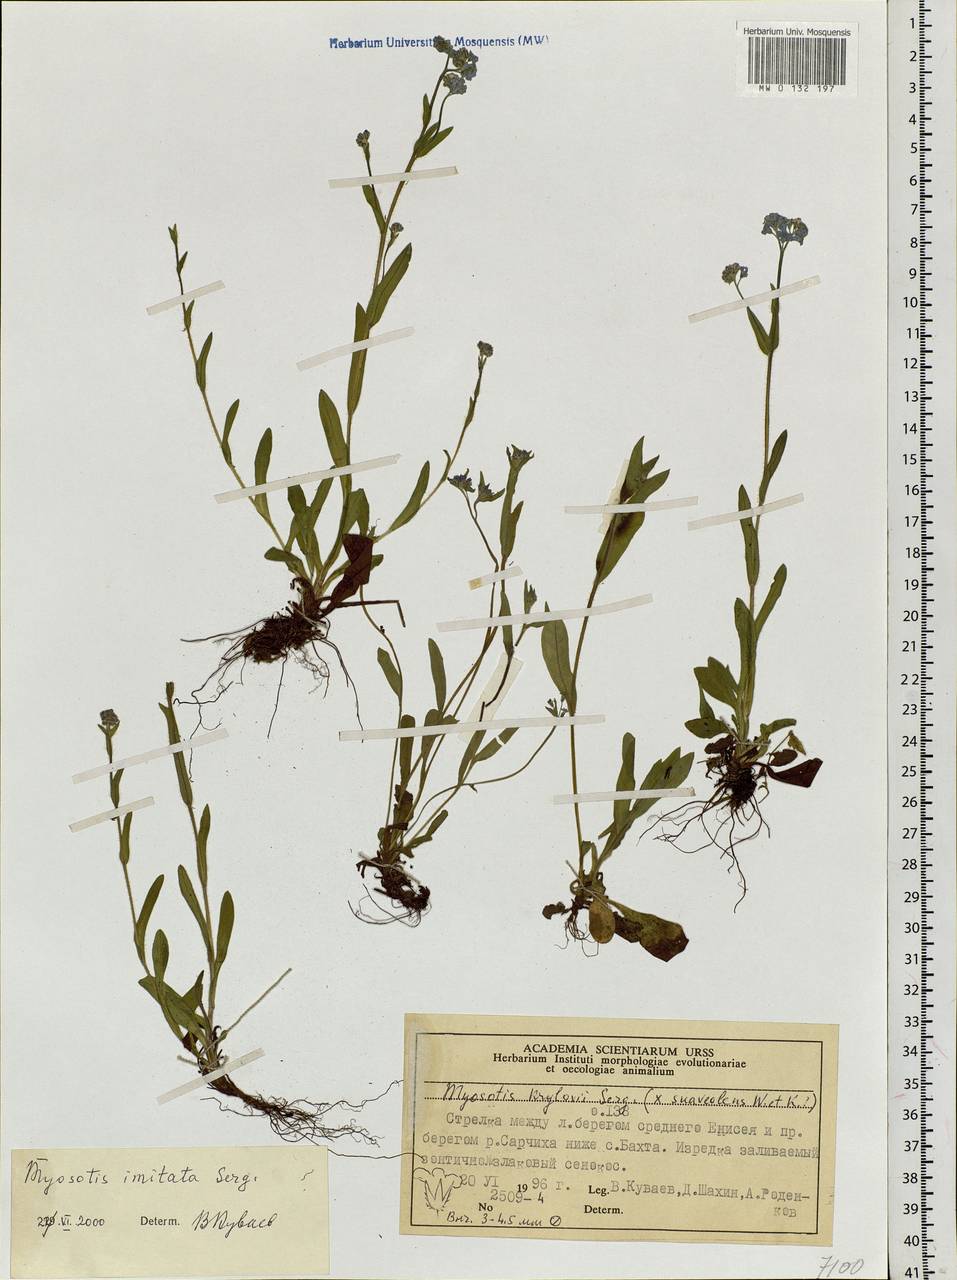 Myosotis alpestris subsp. alpestris, Siberia, Central Siberia (S3) (Russia)